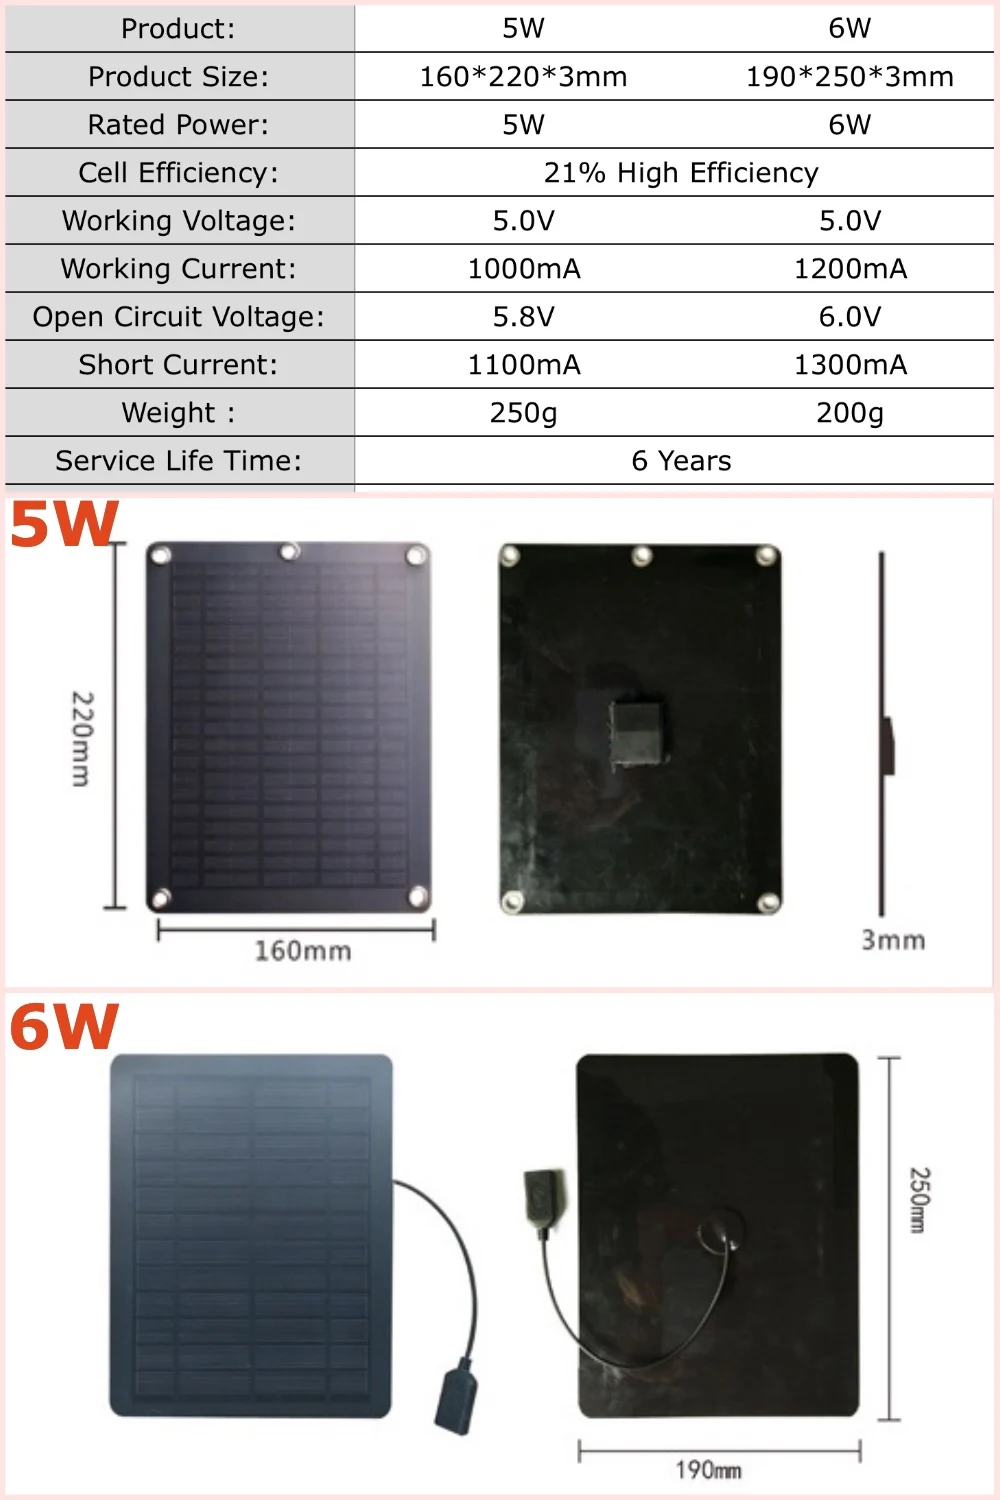 5 W 6 W 3mm PET Портативные монокристаллические солнечные панели зарядное устройство 5 V USB для рюкзака/мобильного телефона/компьютера/зарядки доска